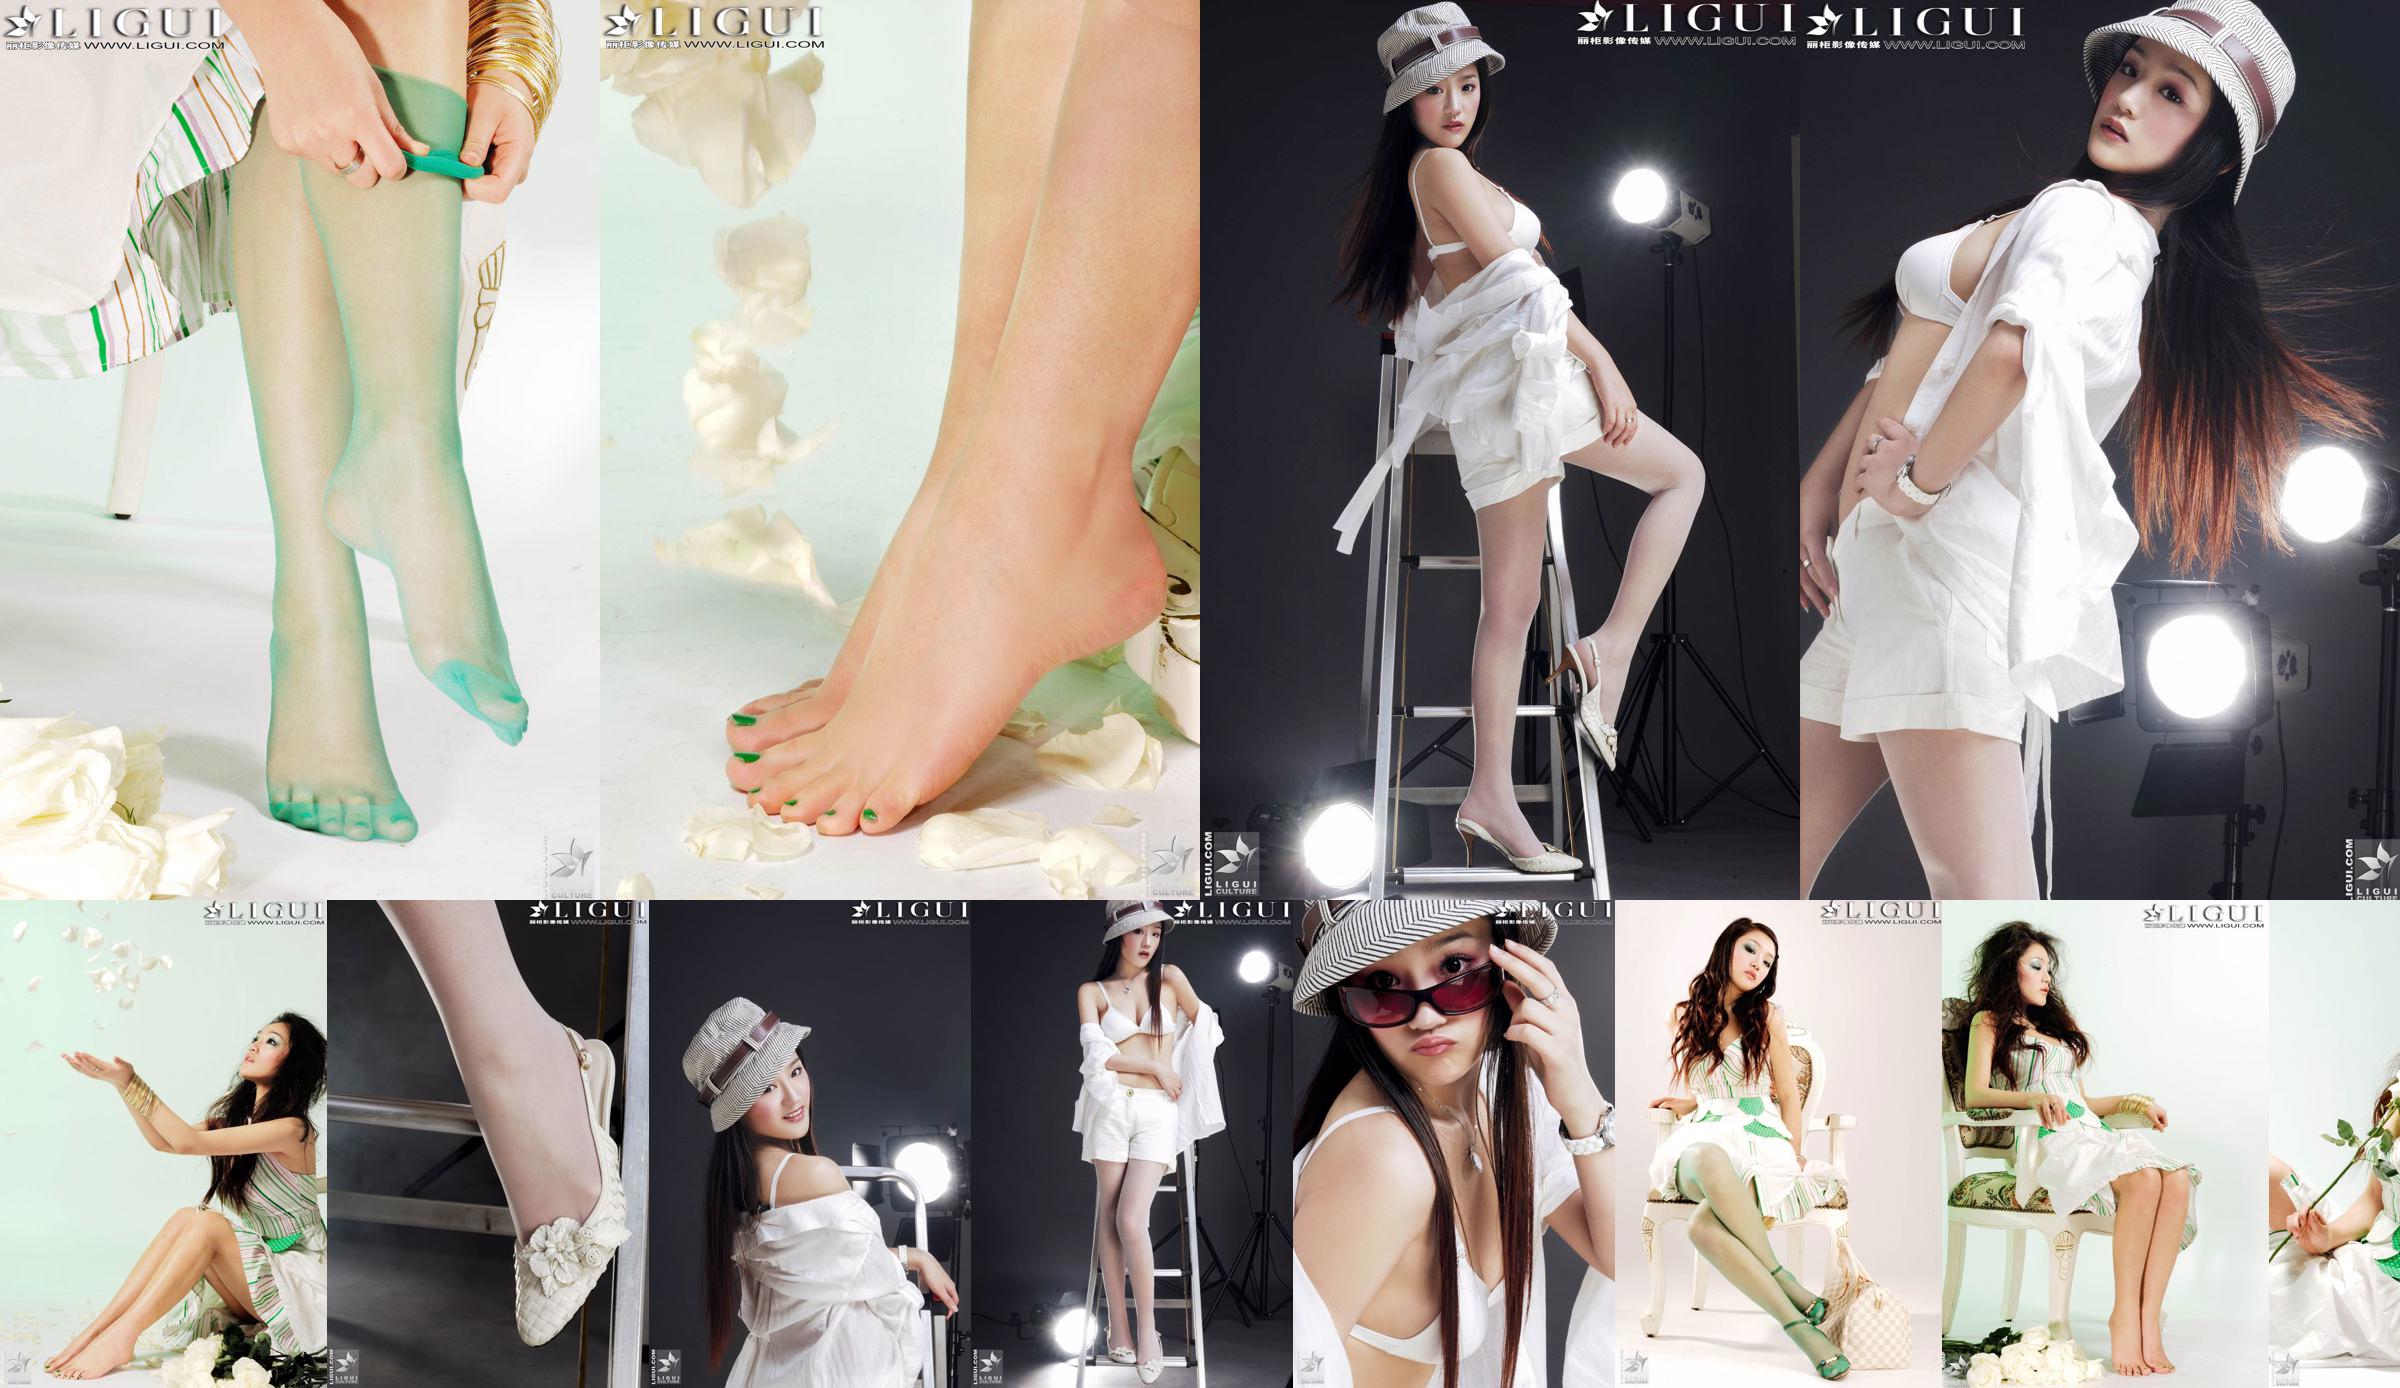 [丽 柜 贵 foot LiGui] Фотография красивых ног и шелковых ступней модели Чжан Цзинъянь "Модная ступня" No.47098a Страница 1